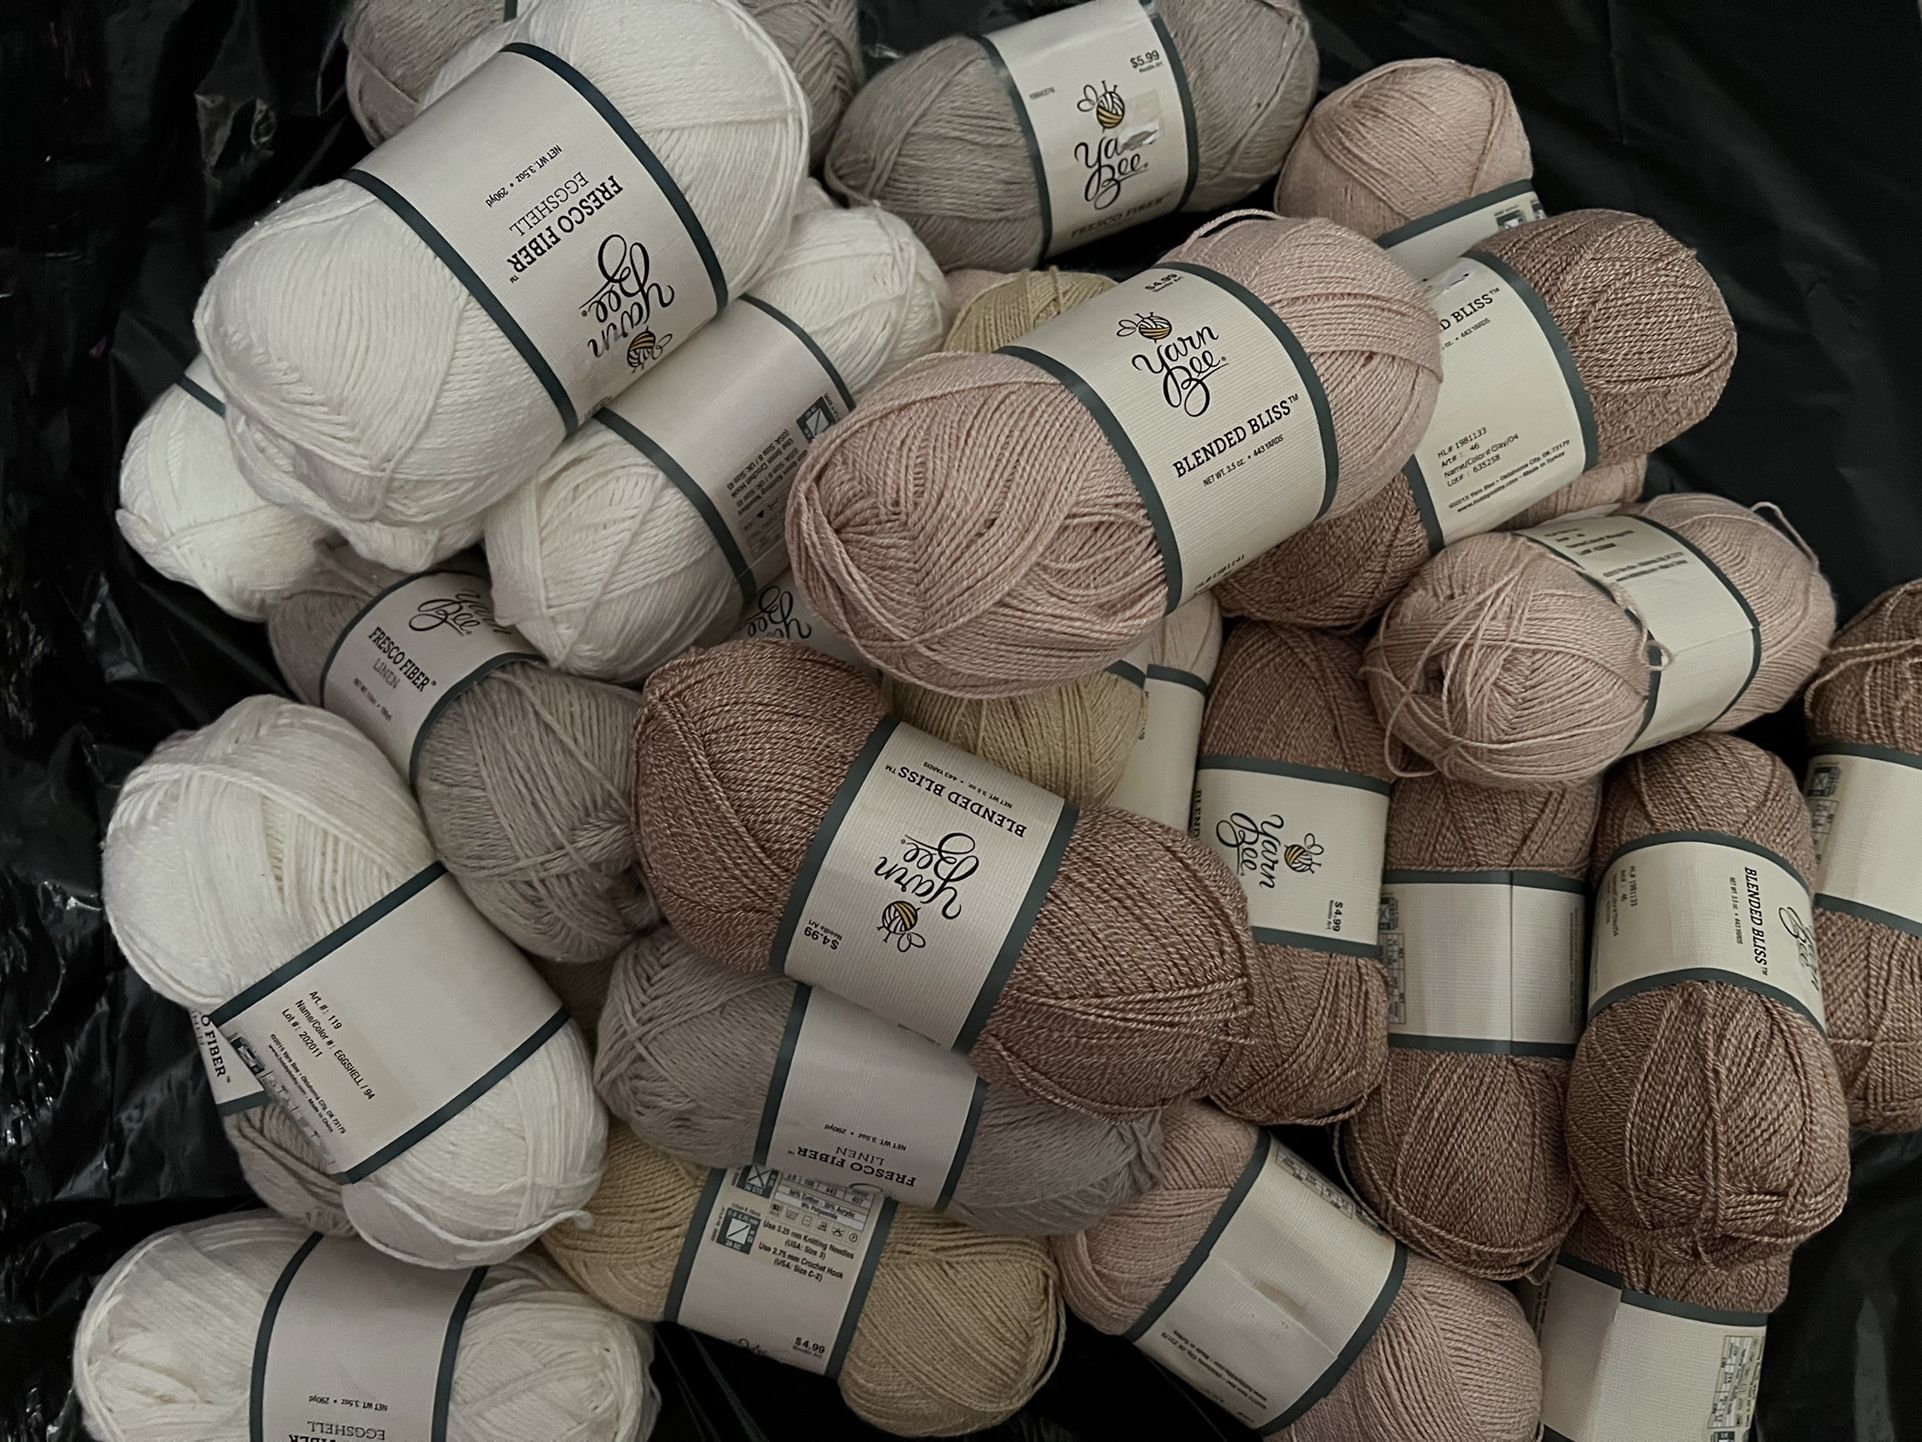 Yarn Knitting/Crochet: Hilo De Tejer/Tejido De Punto (29)